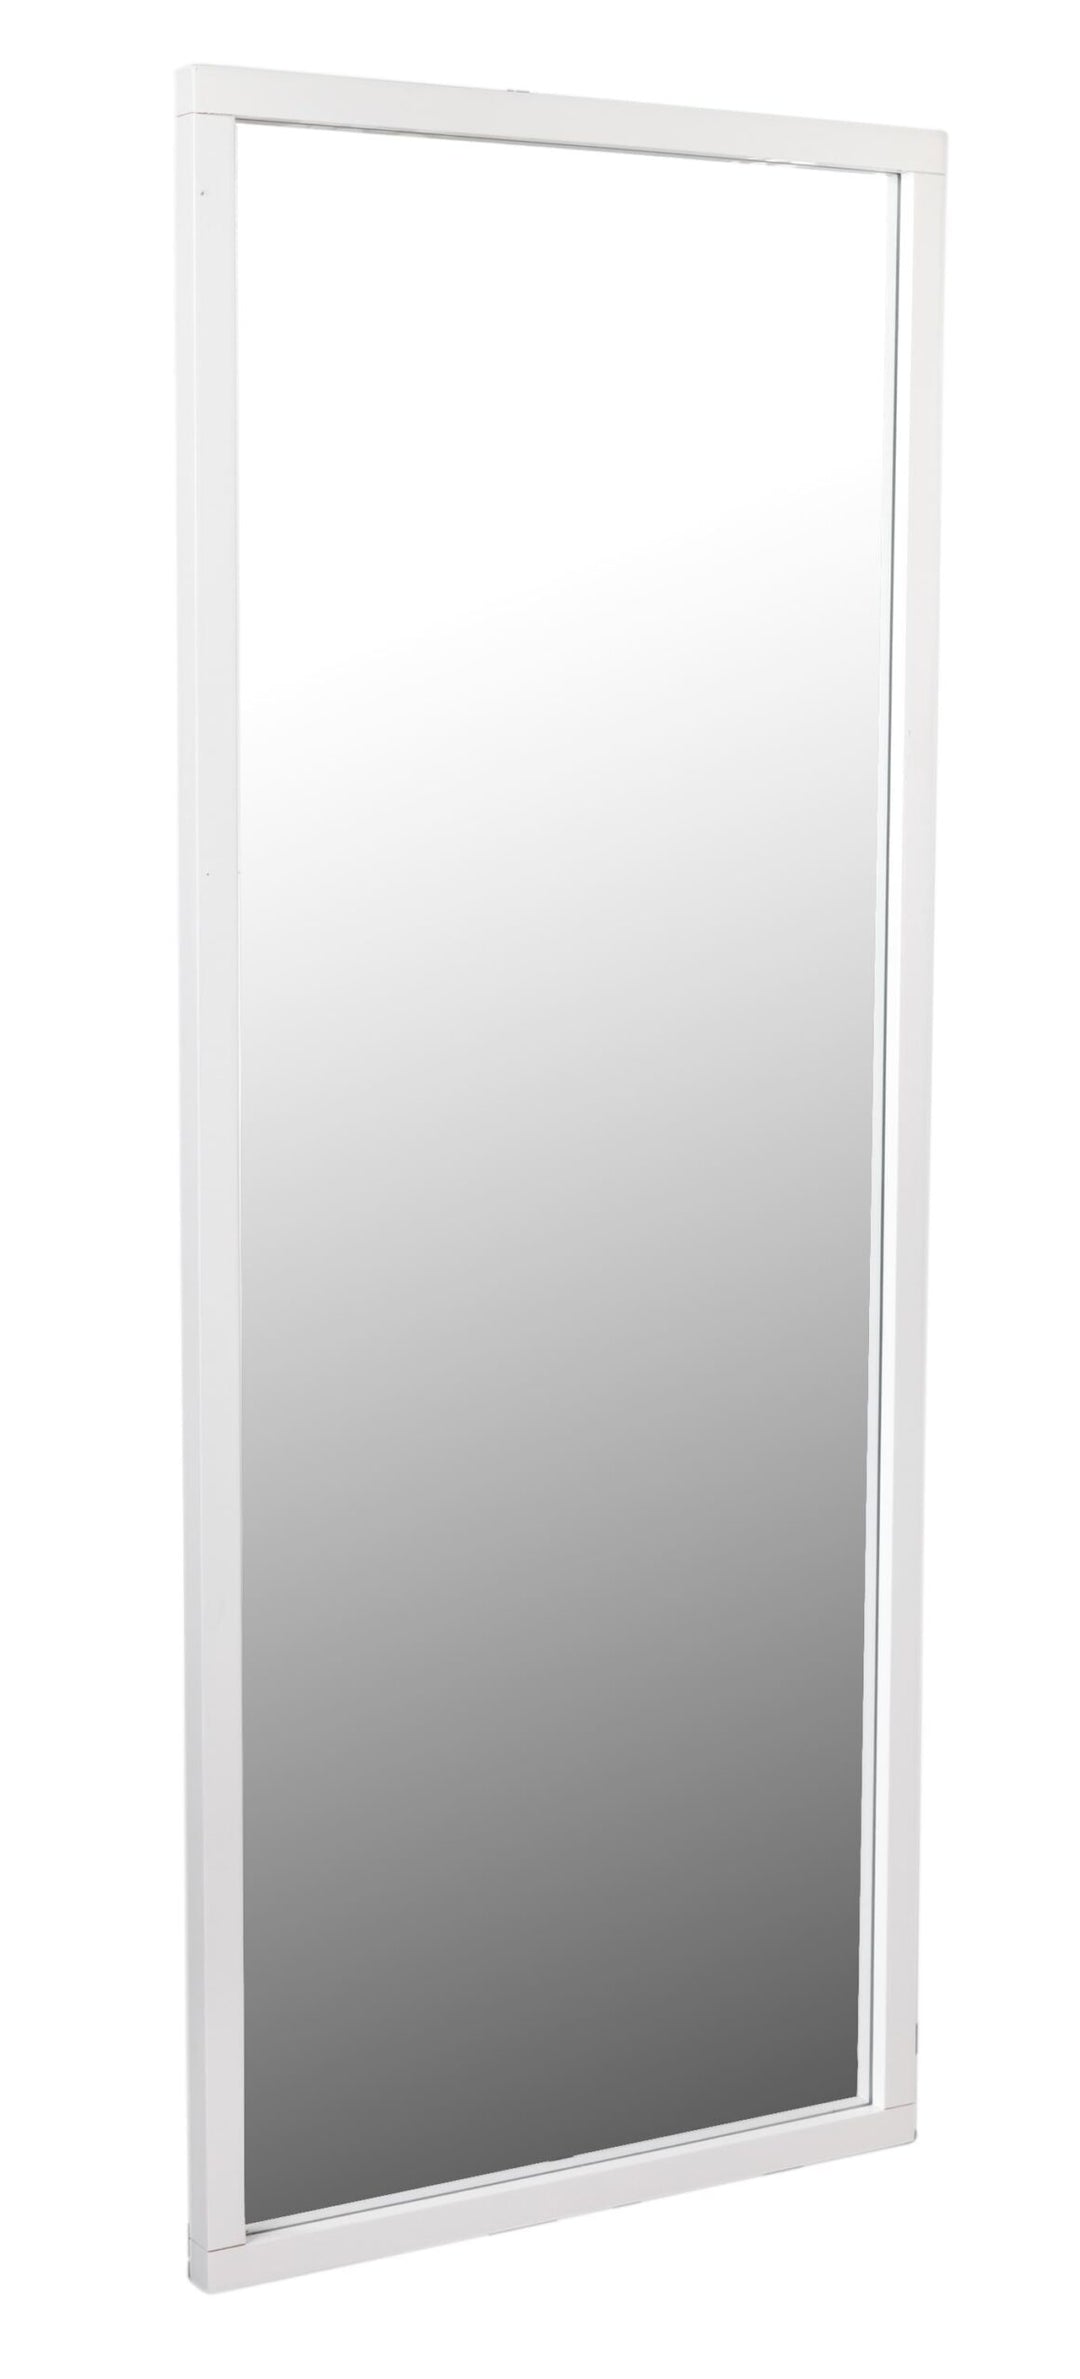 103807 Confetti mirror 60x150 white (1-pack)